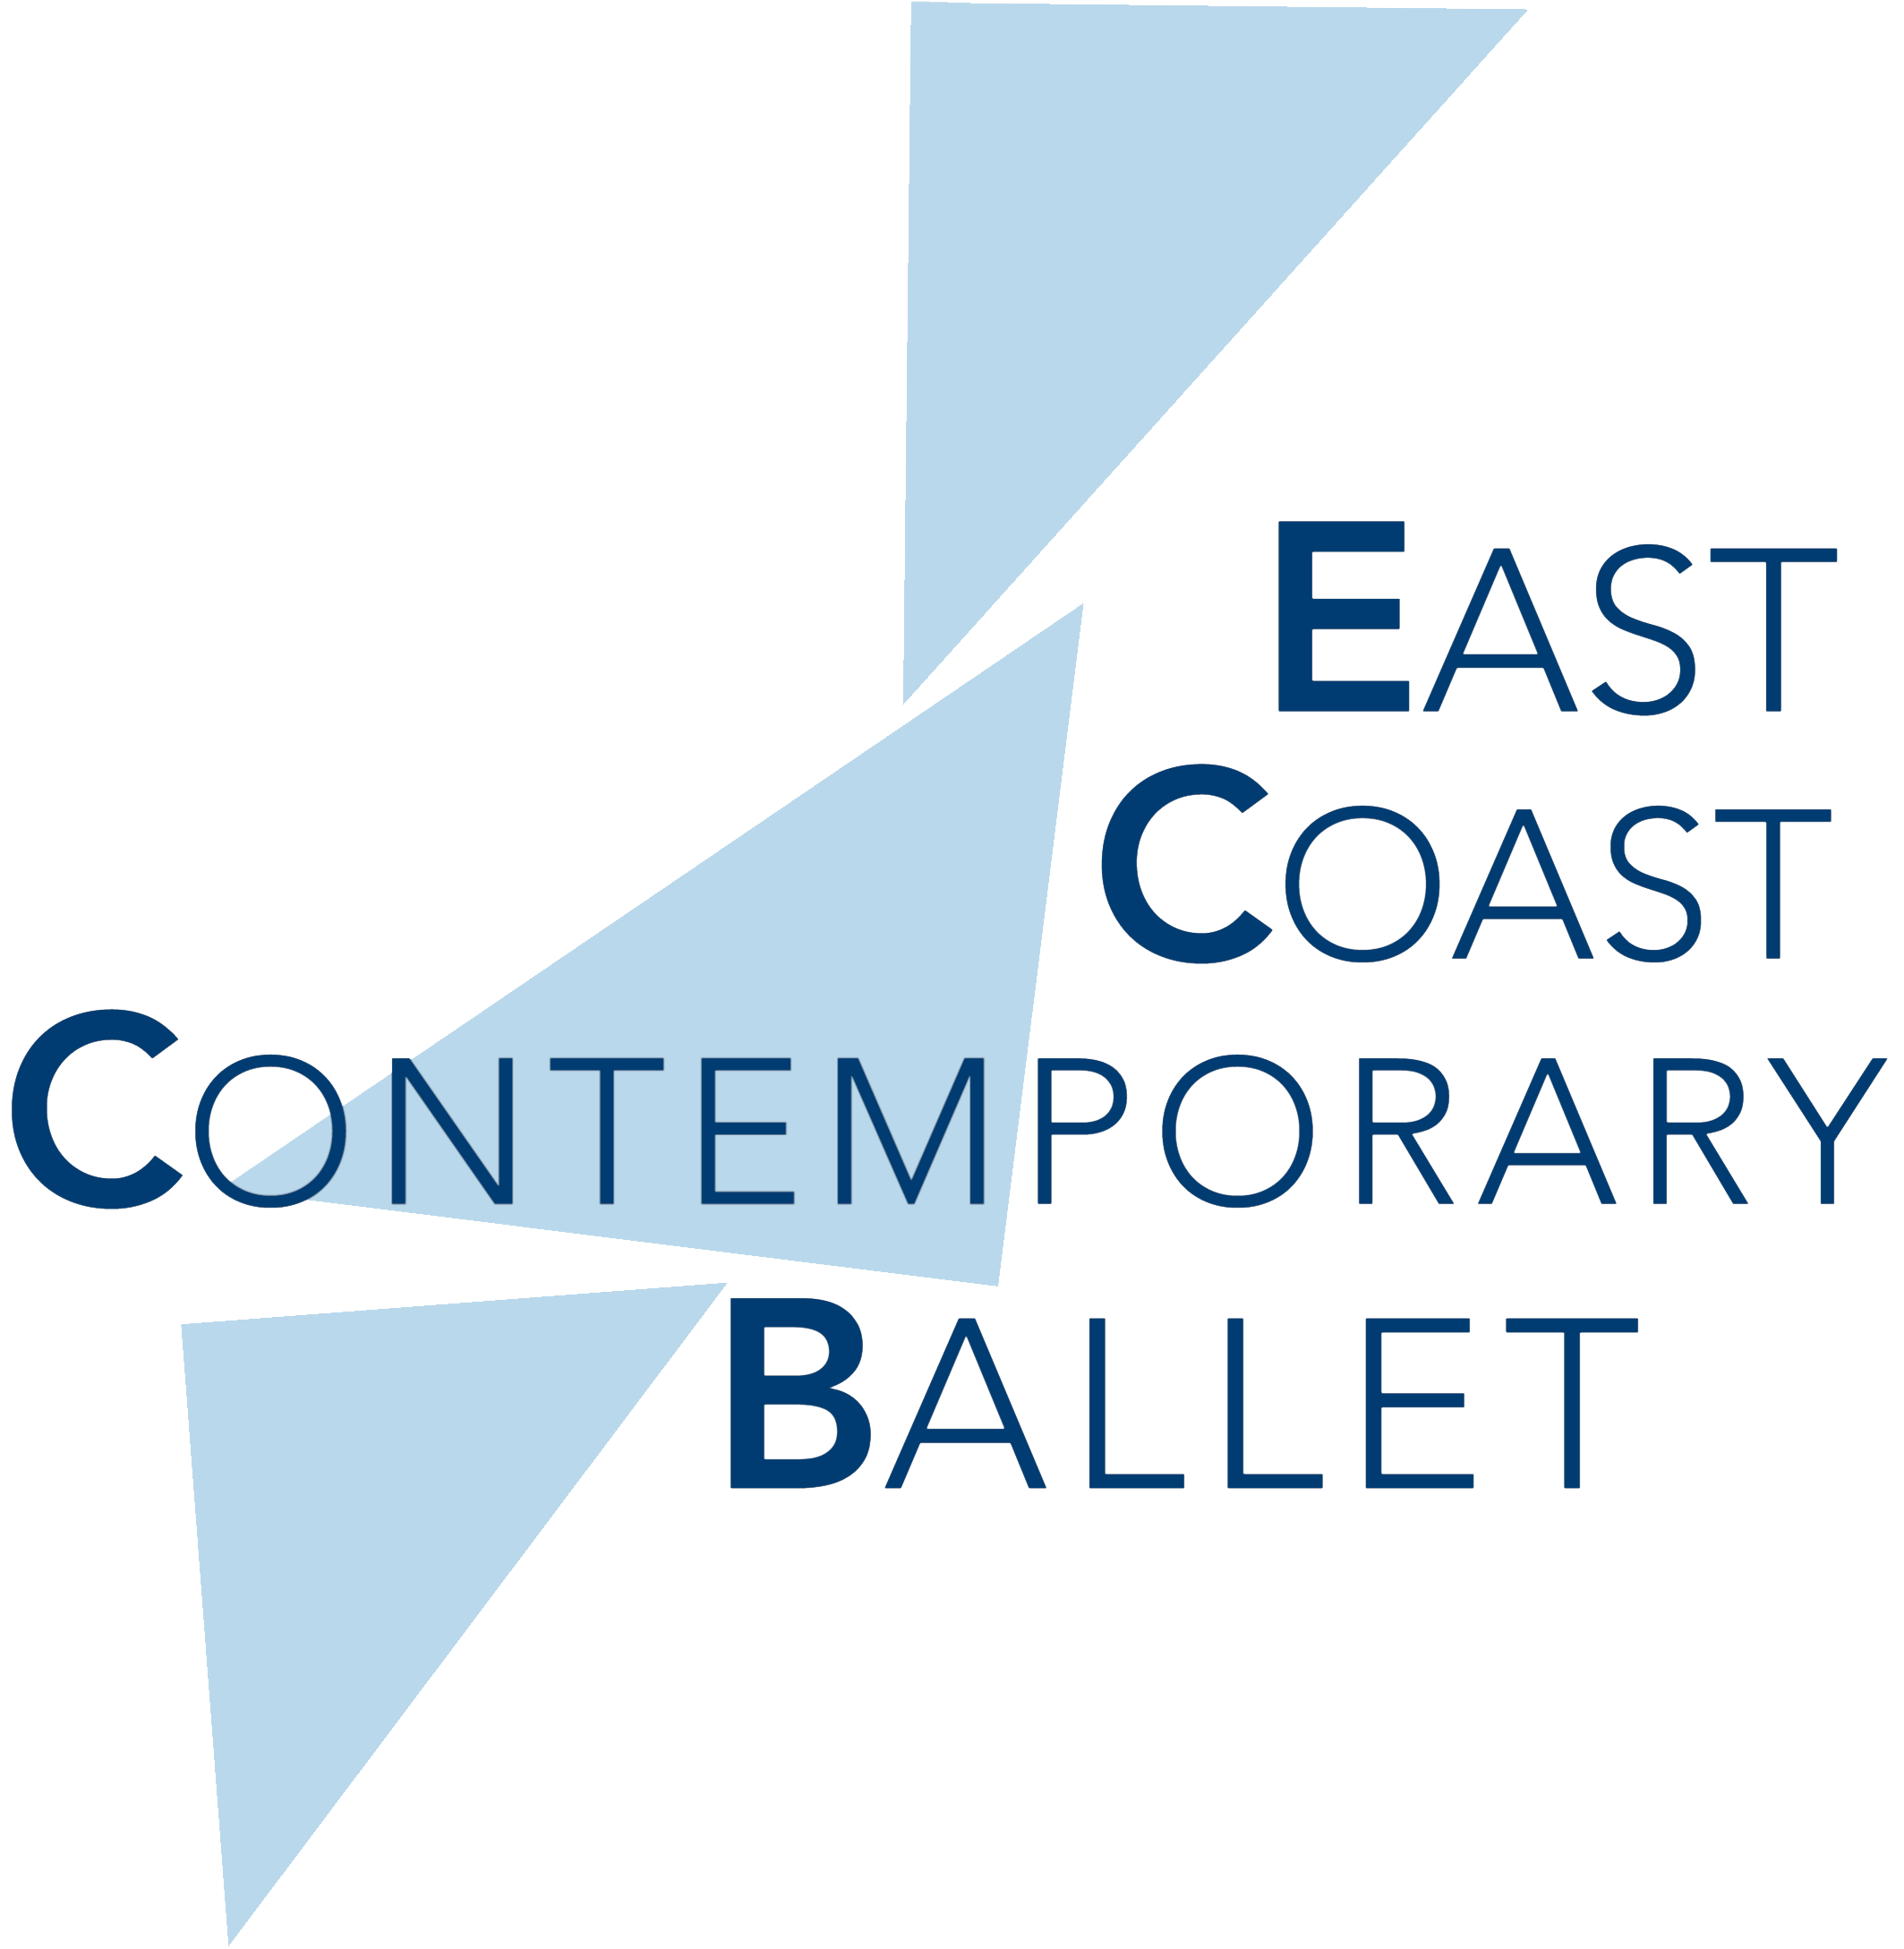 East Coast Contemporary Ballet logo